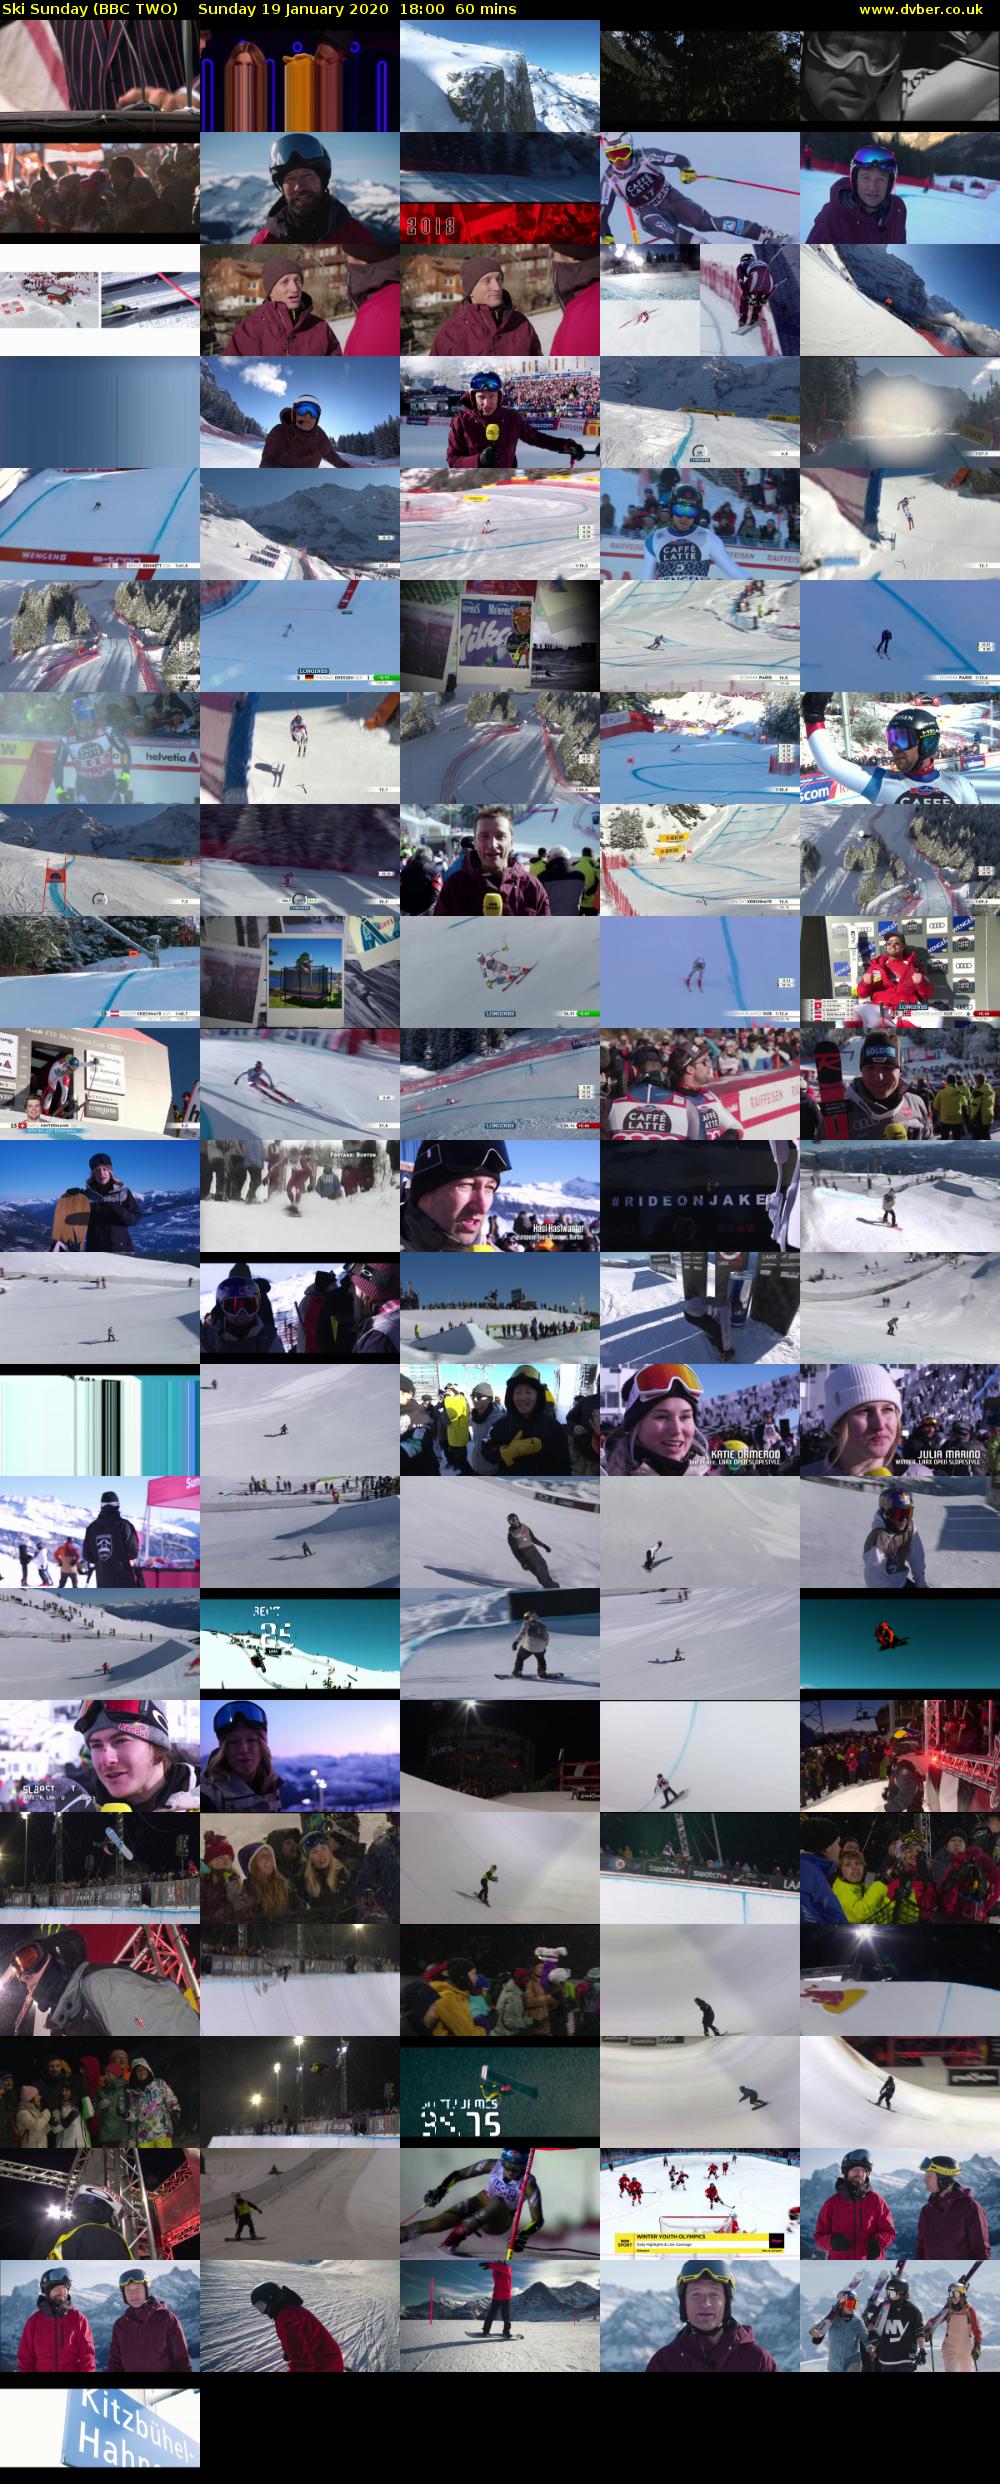 Ski Sunday (BBC TWO) Sunday 19 January 2020 18:00 - 19:00